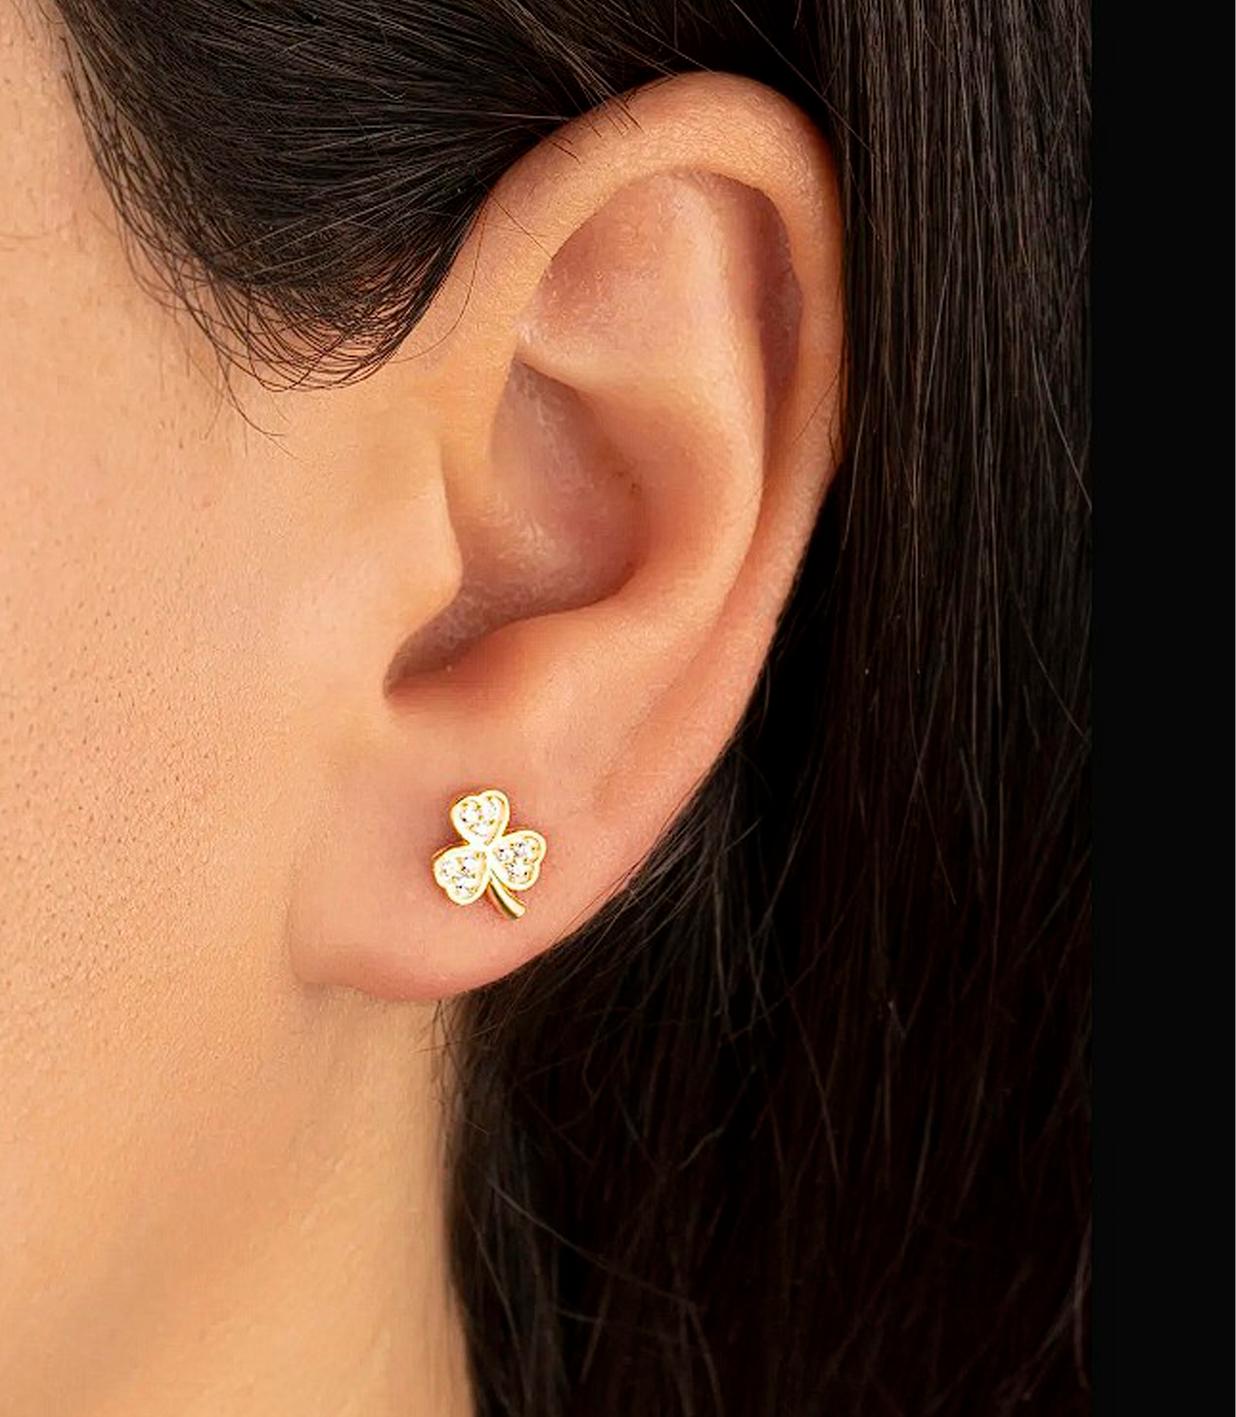 Modern Dainty 3 Petal Flower Stud Earrings.  For Sale